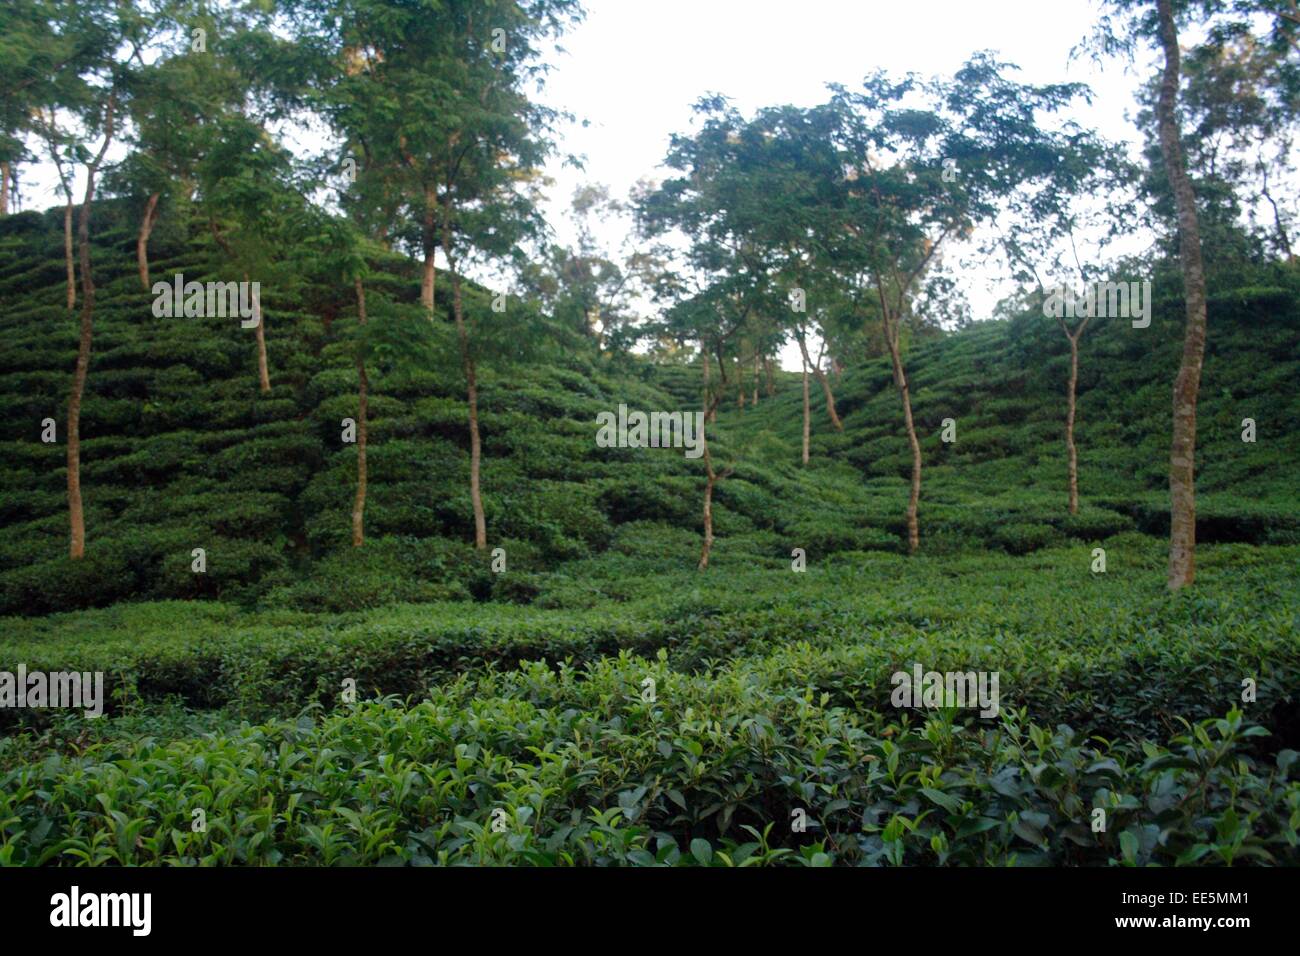 Tea garden sylhet Bangladesh Stock Photo